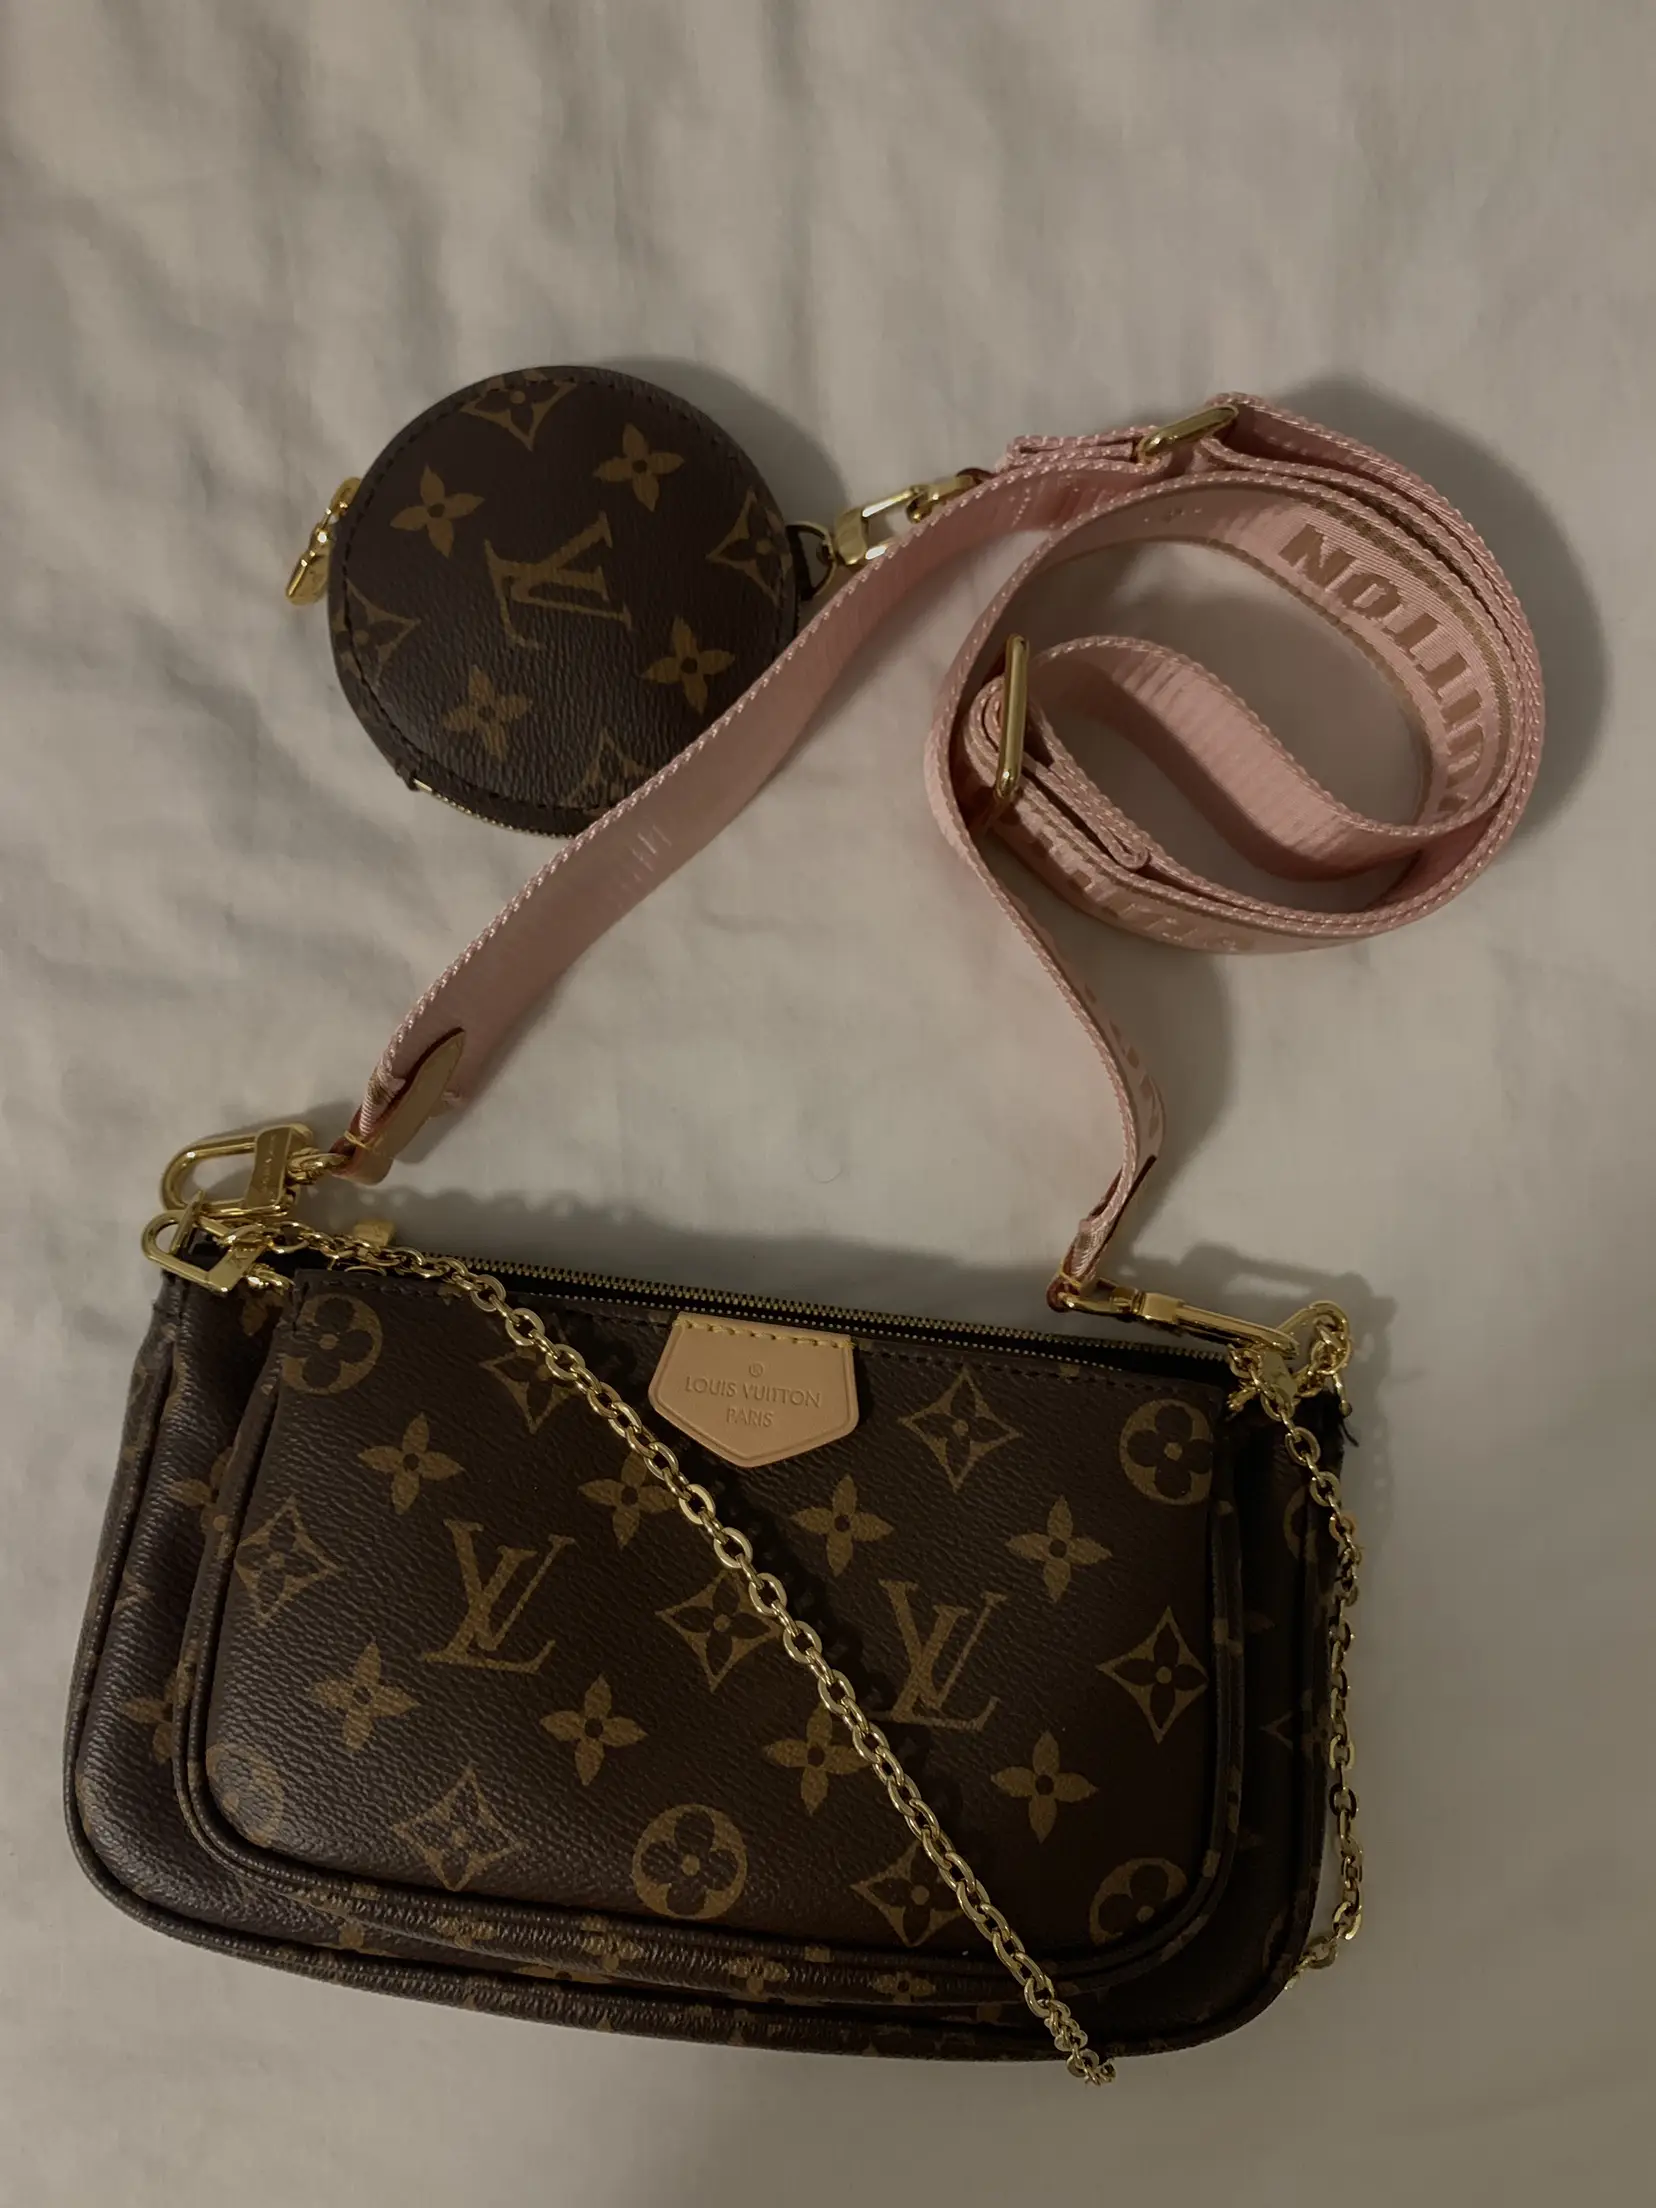 Help me choose between Celine Ava Bag or LV pochette accessoires